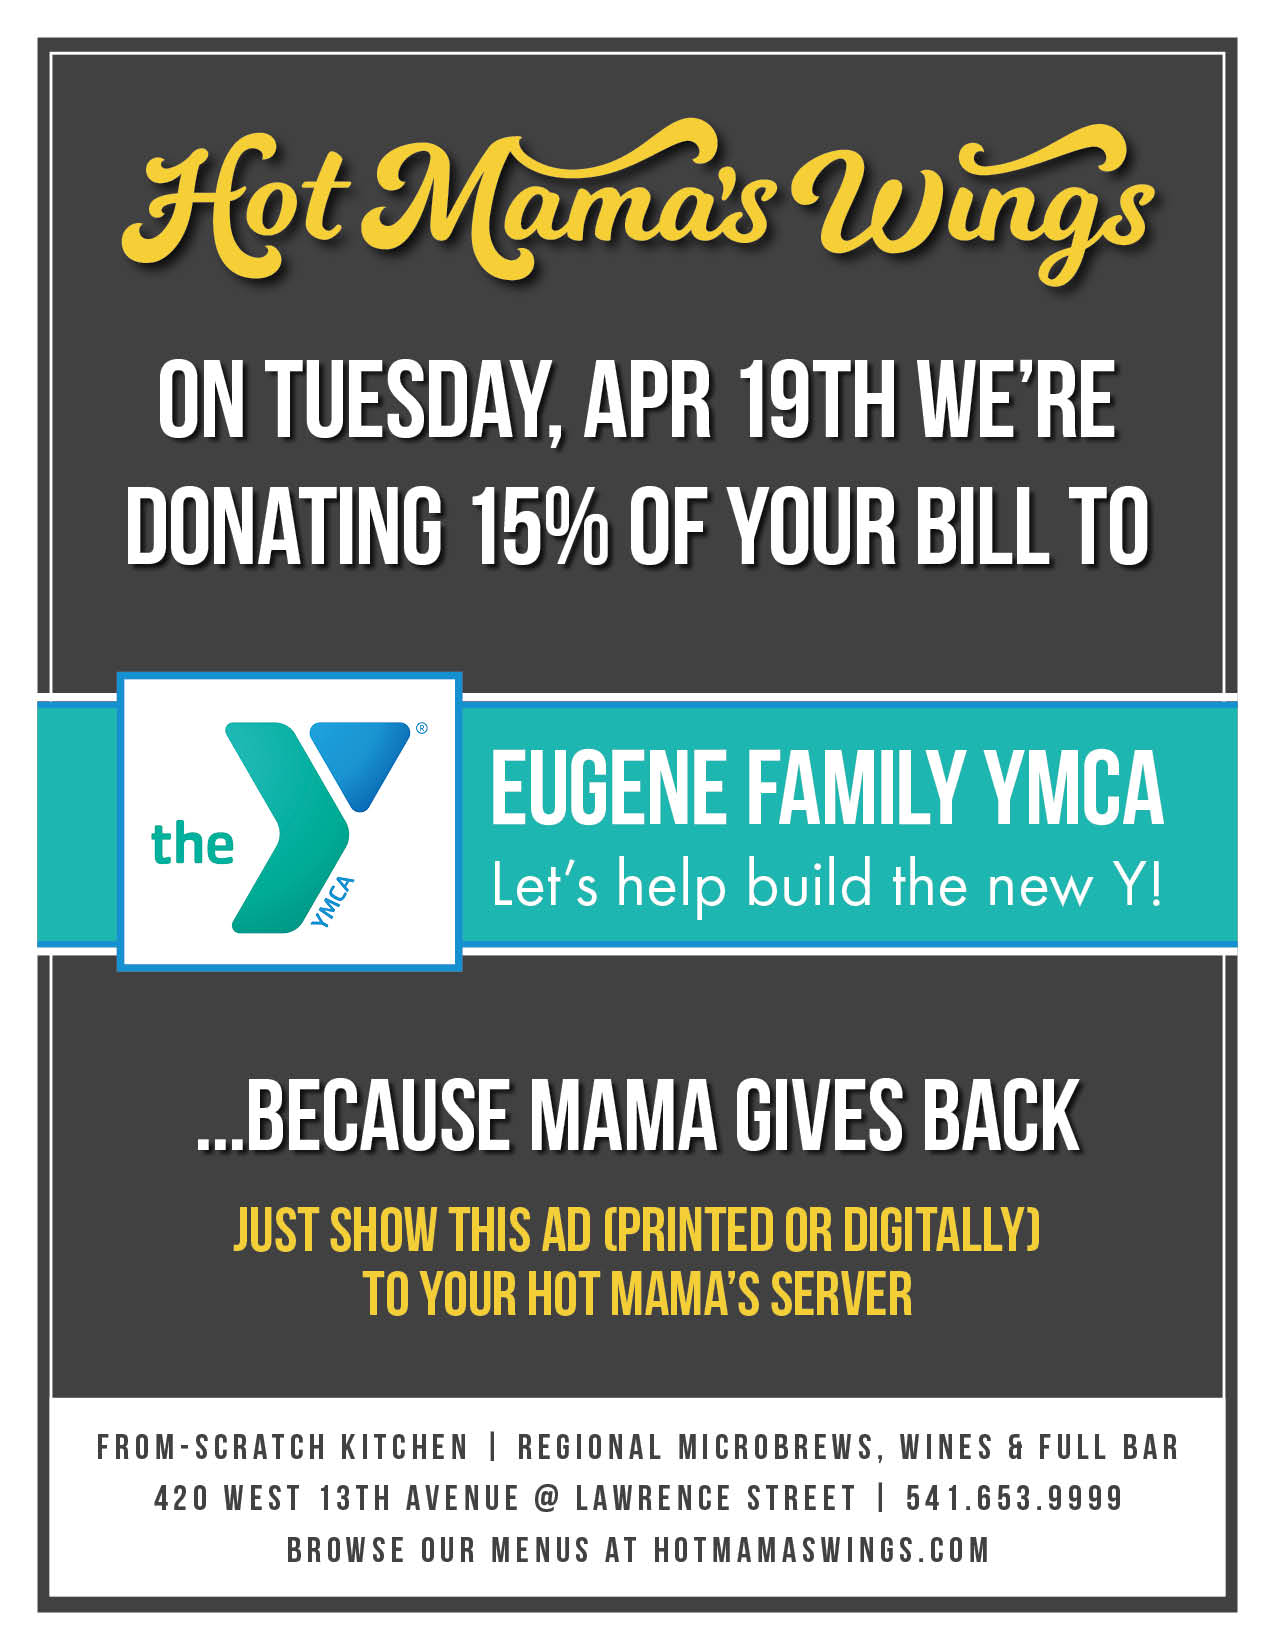 Hot mama's wings ymca fundraiser